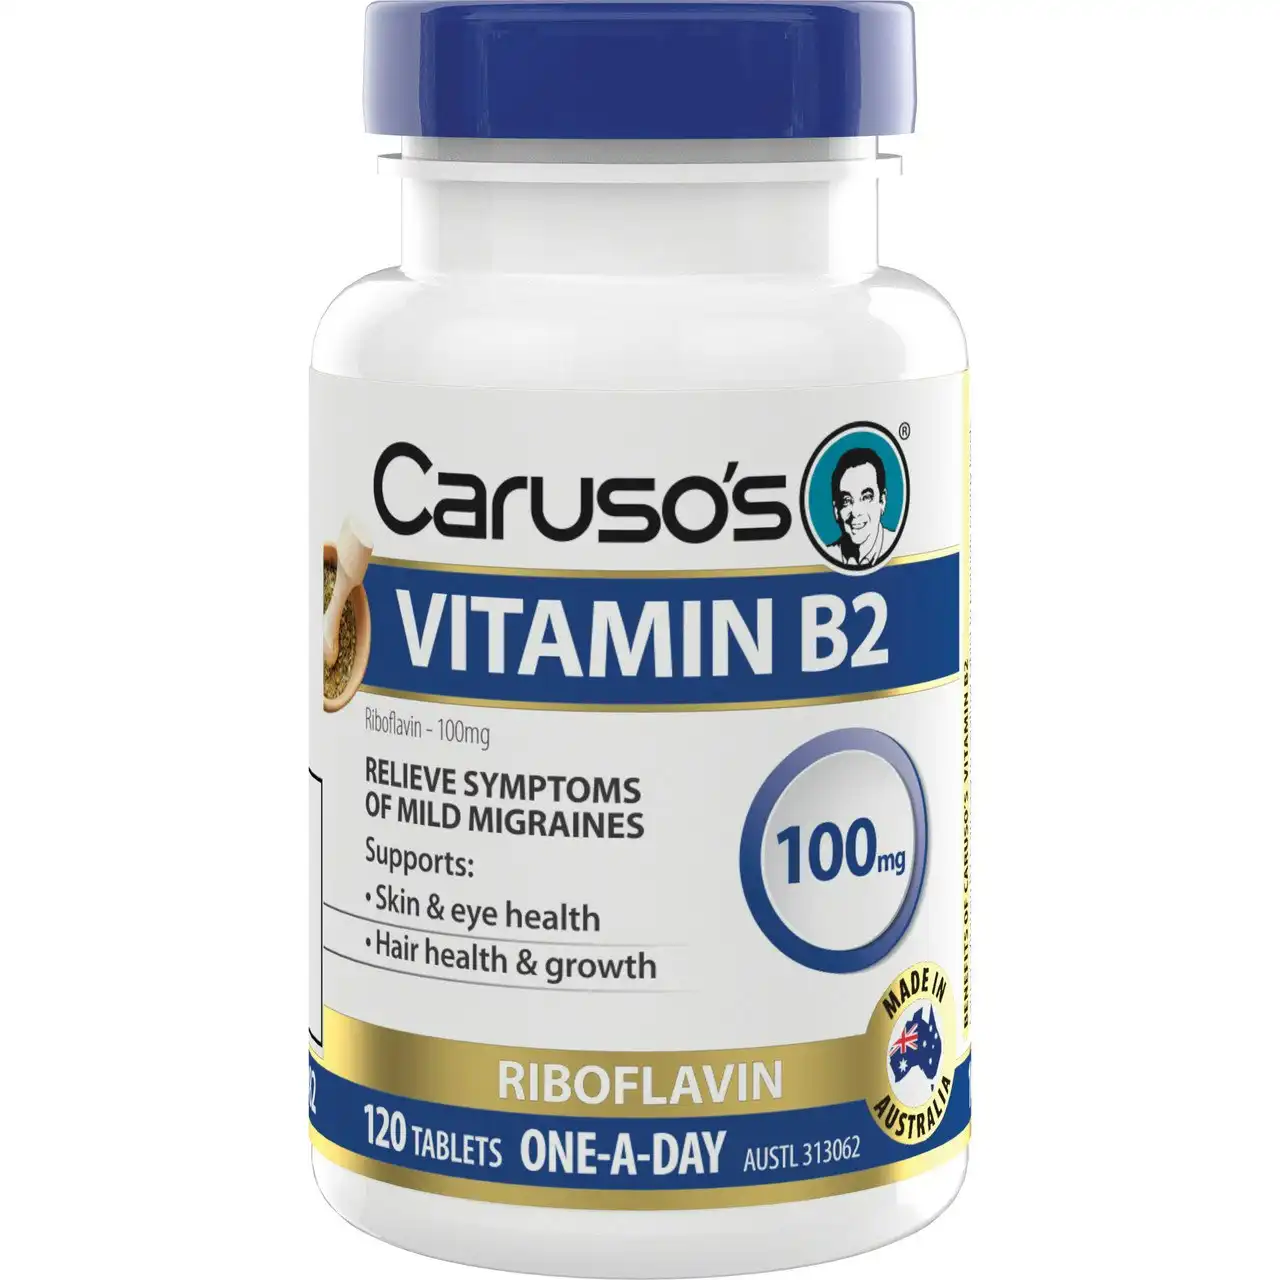 Caruso's Vitamin B2